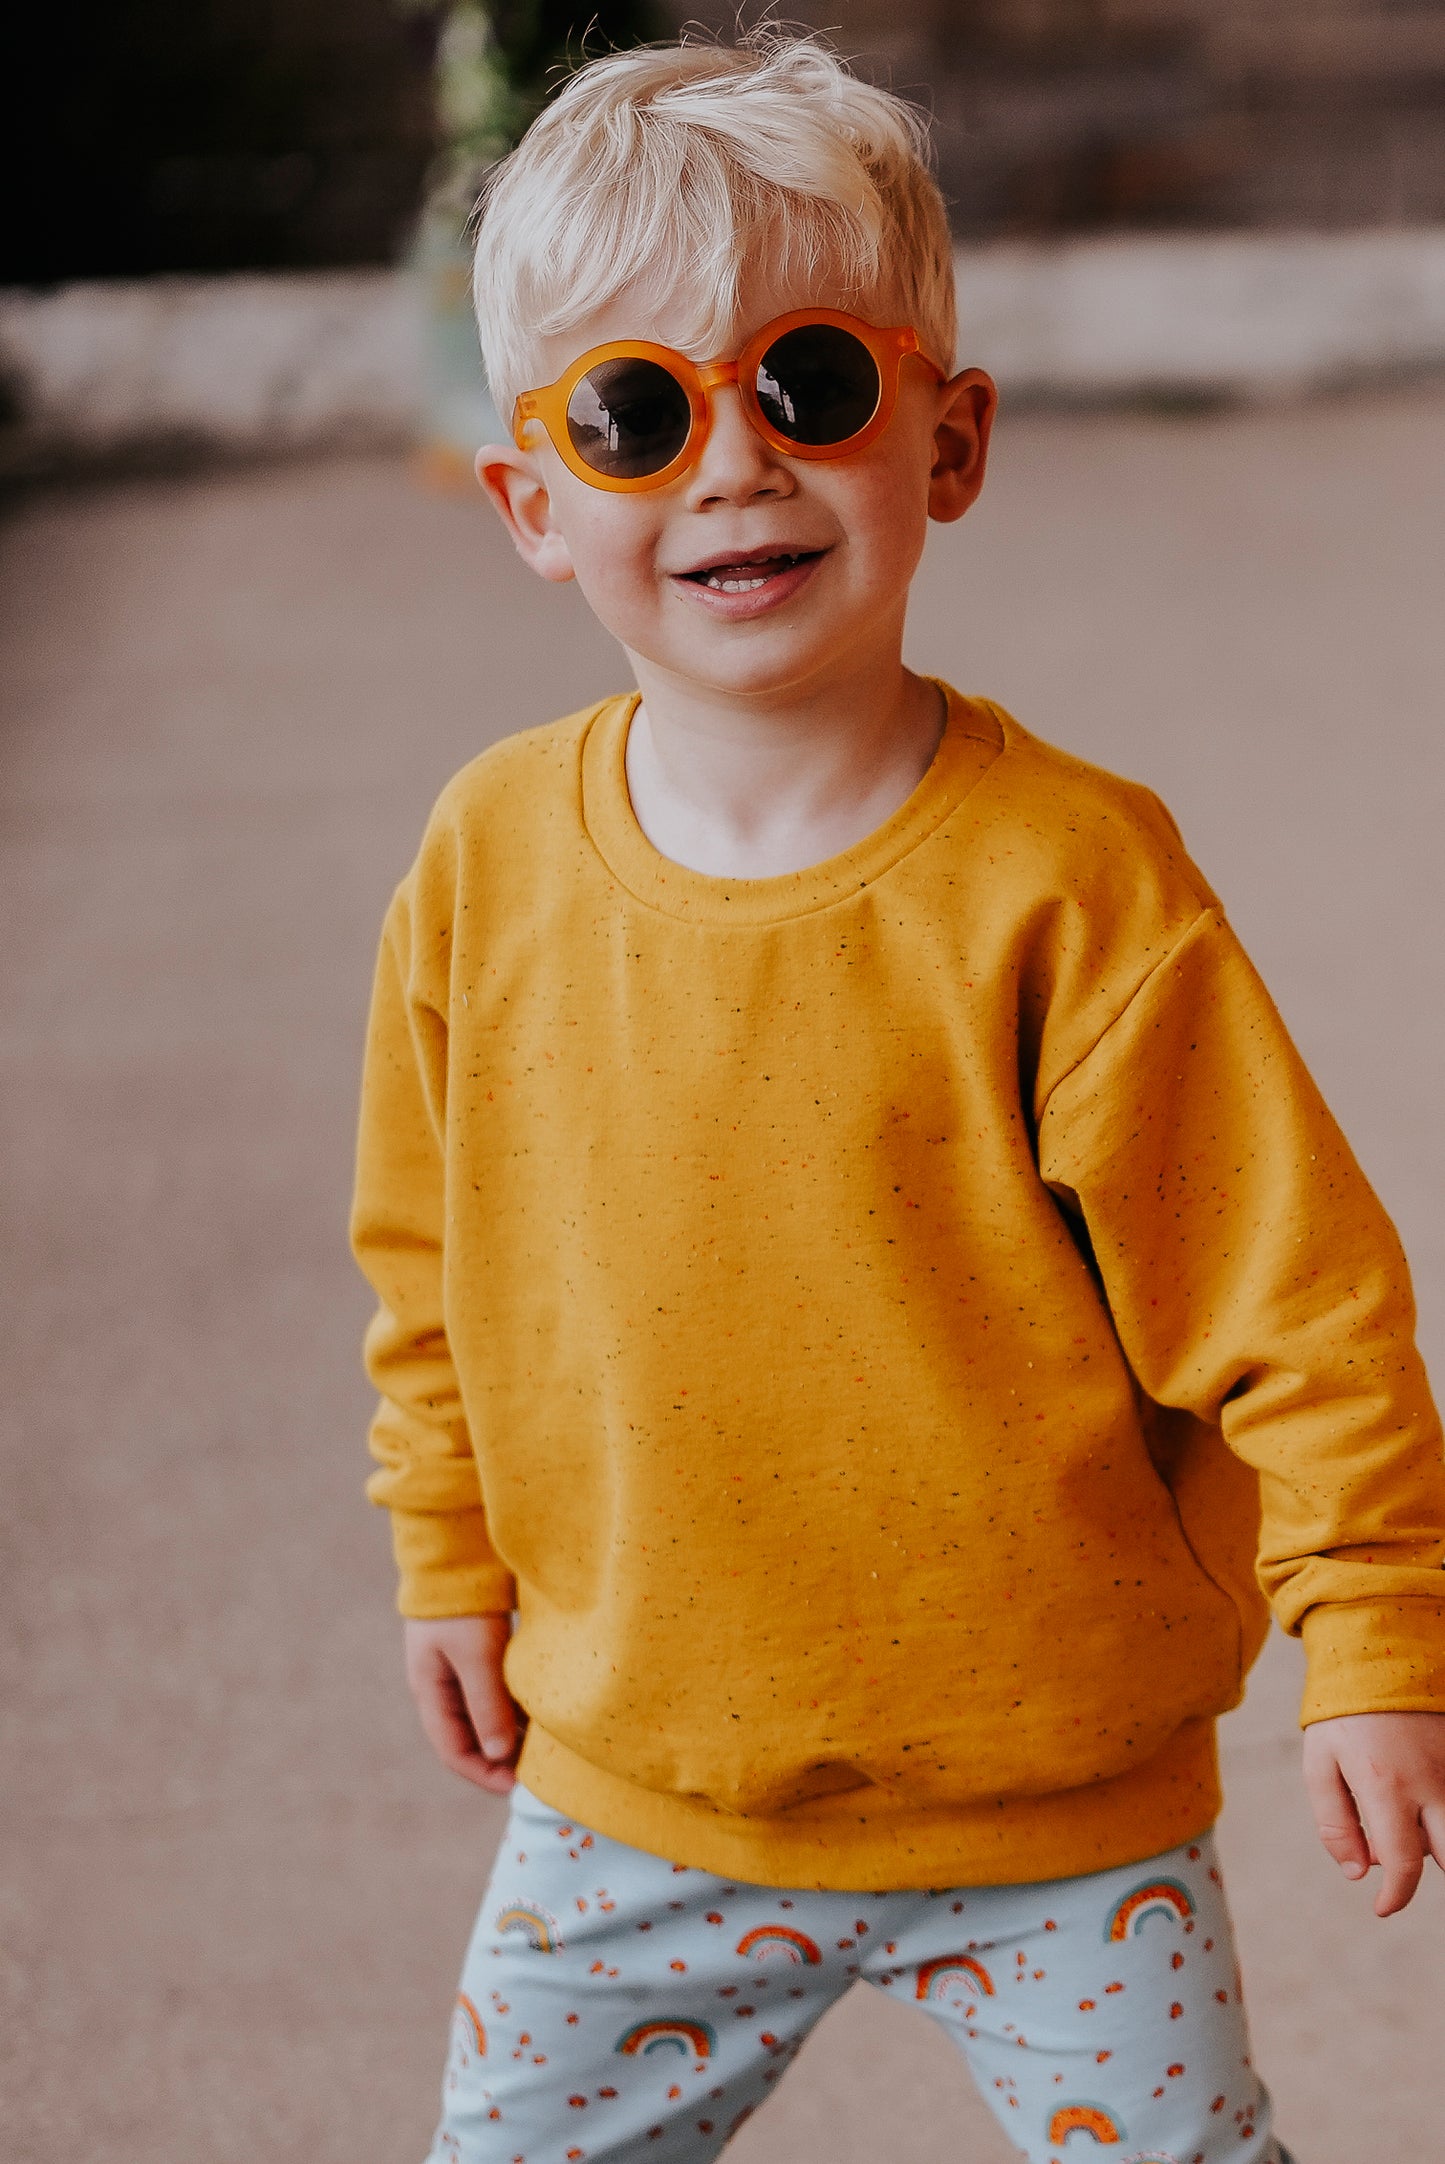 Mustard Yellow Baby & Children's Sweater